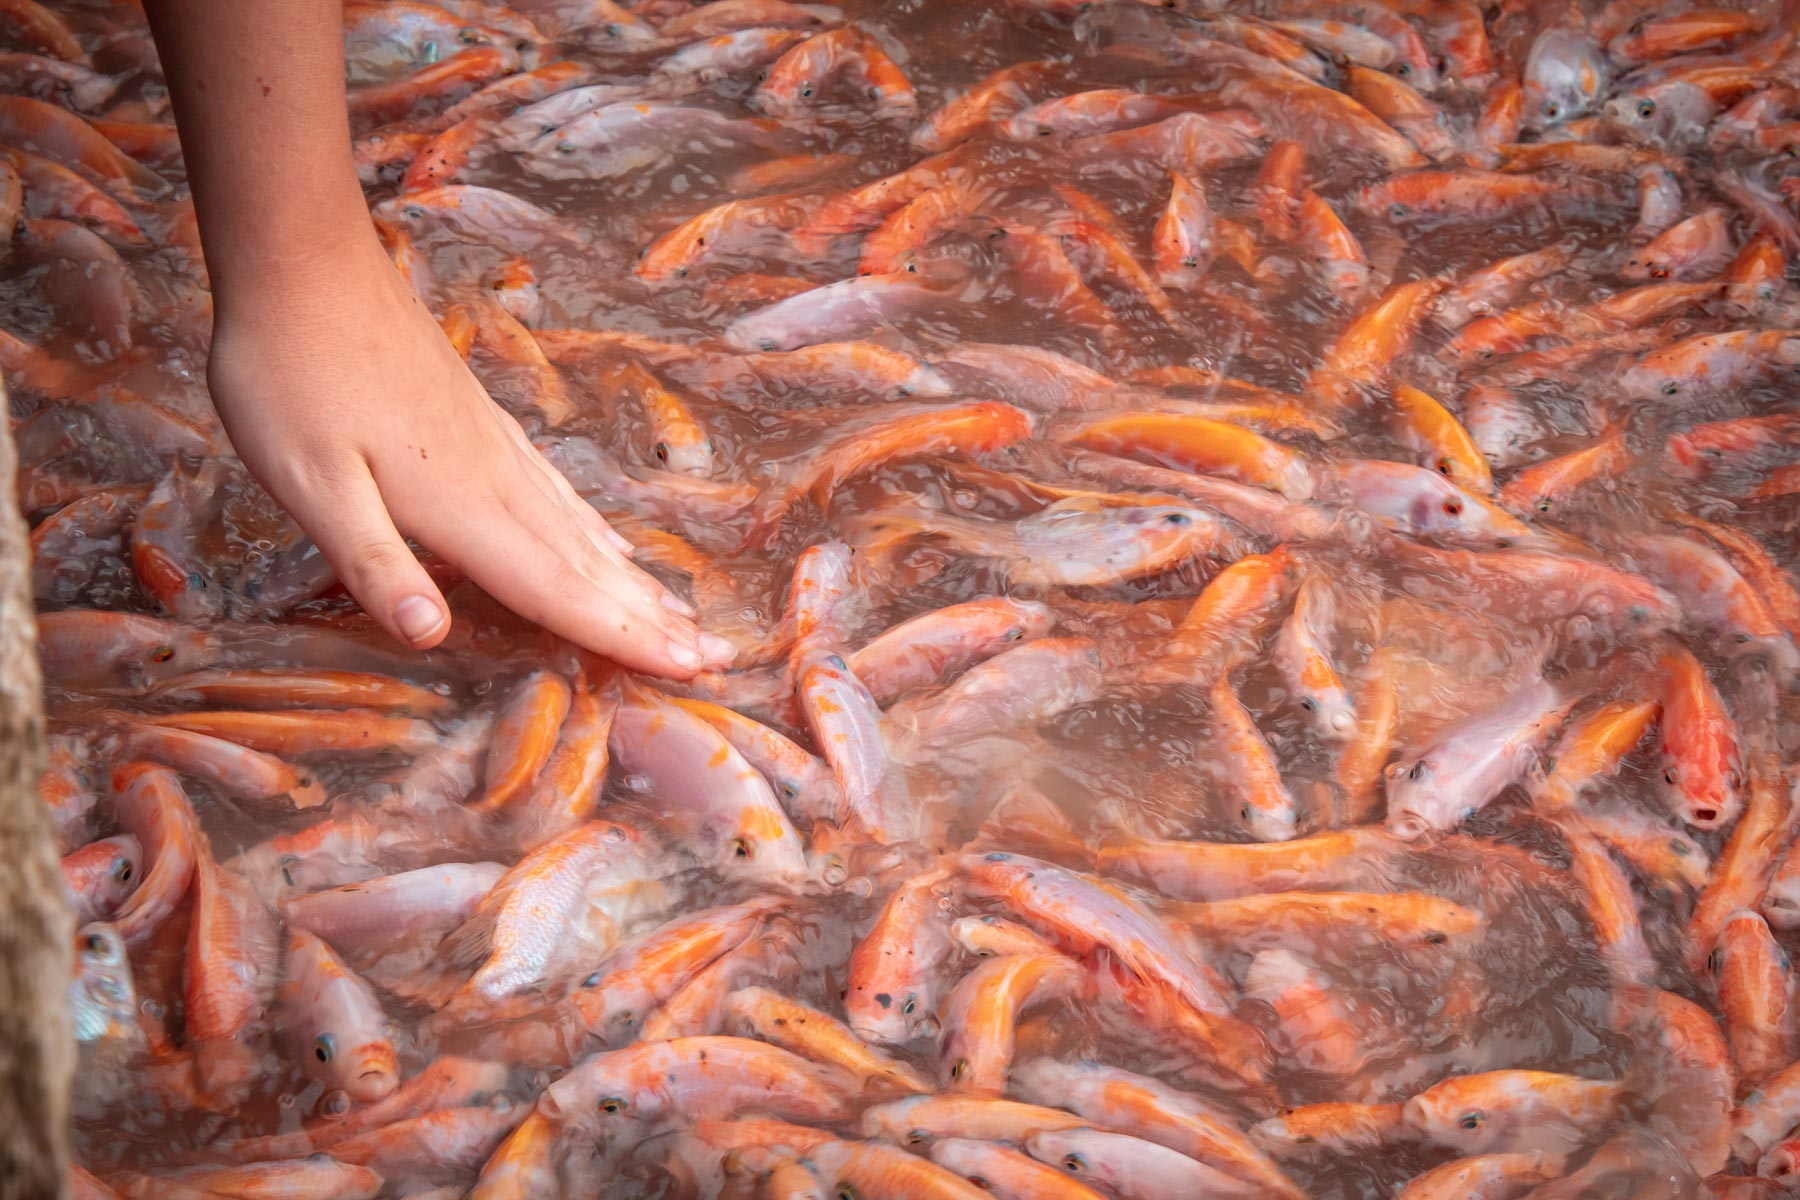 Fish farming / aquaculture